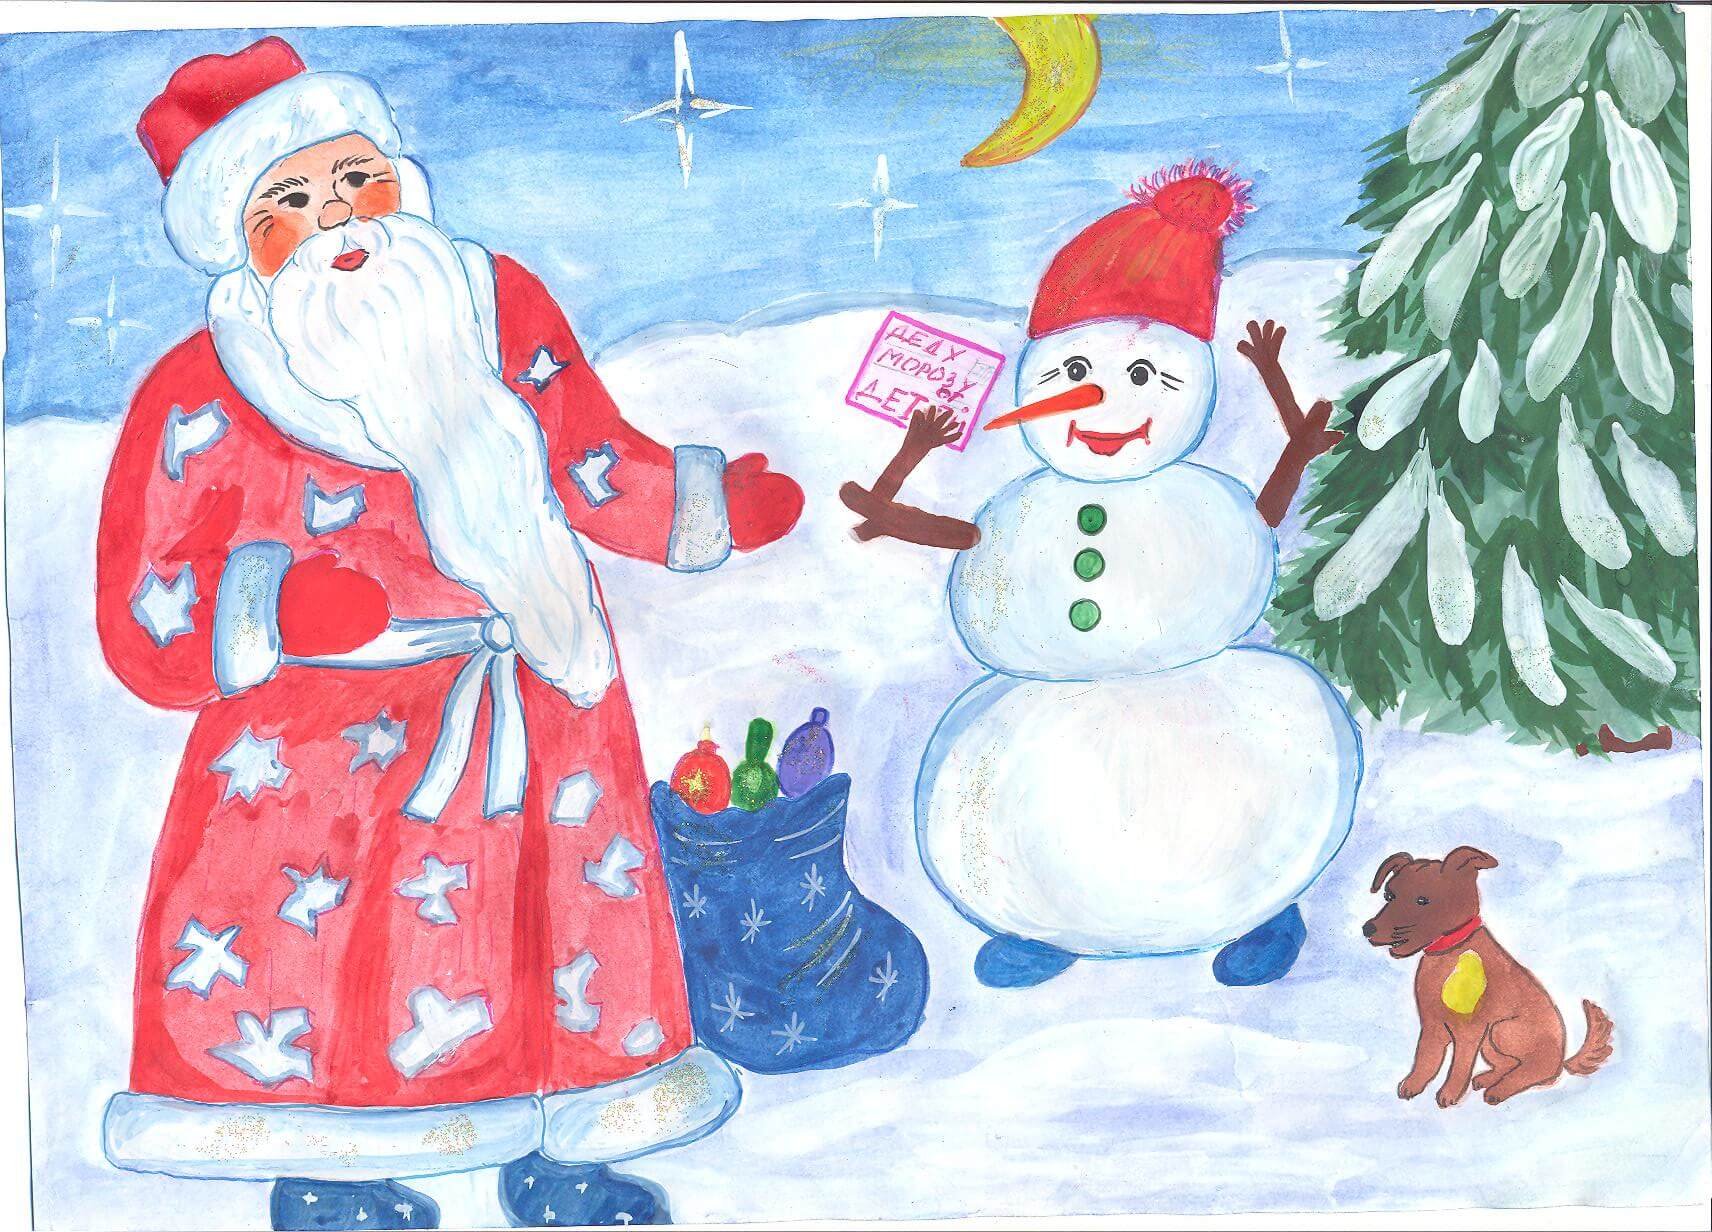 Изобразить на новый год. Новогодние рисунки. Рисунок на новогоднюю тему. Детские новогодние рисунки. Наваго д ниирисунки.